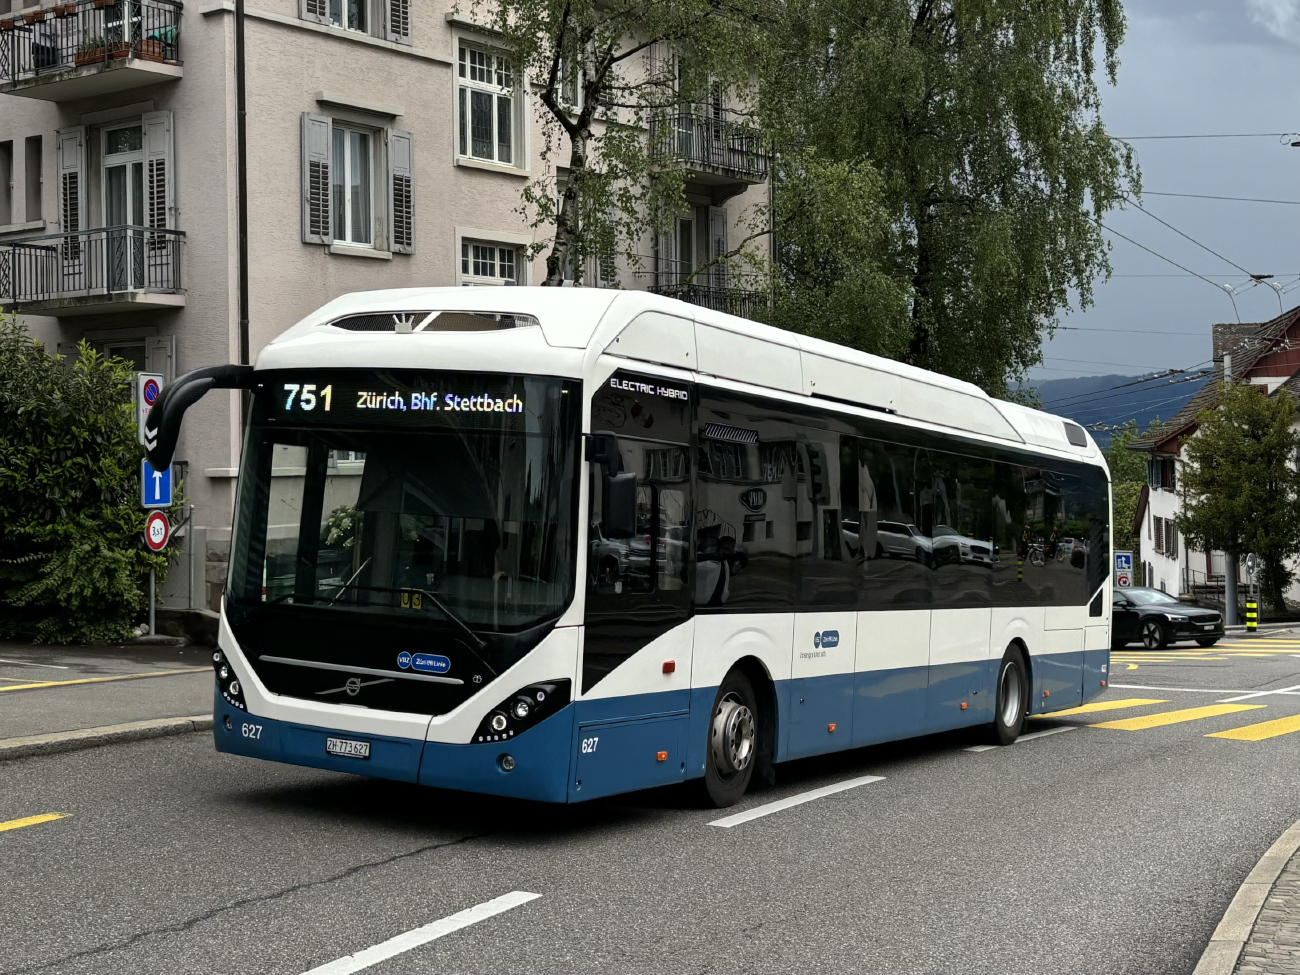 Zurich, Volvo 7900 Electric Hybrid # 627